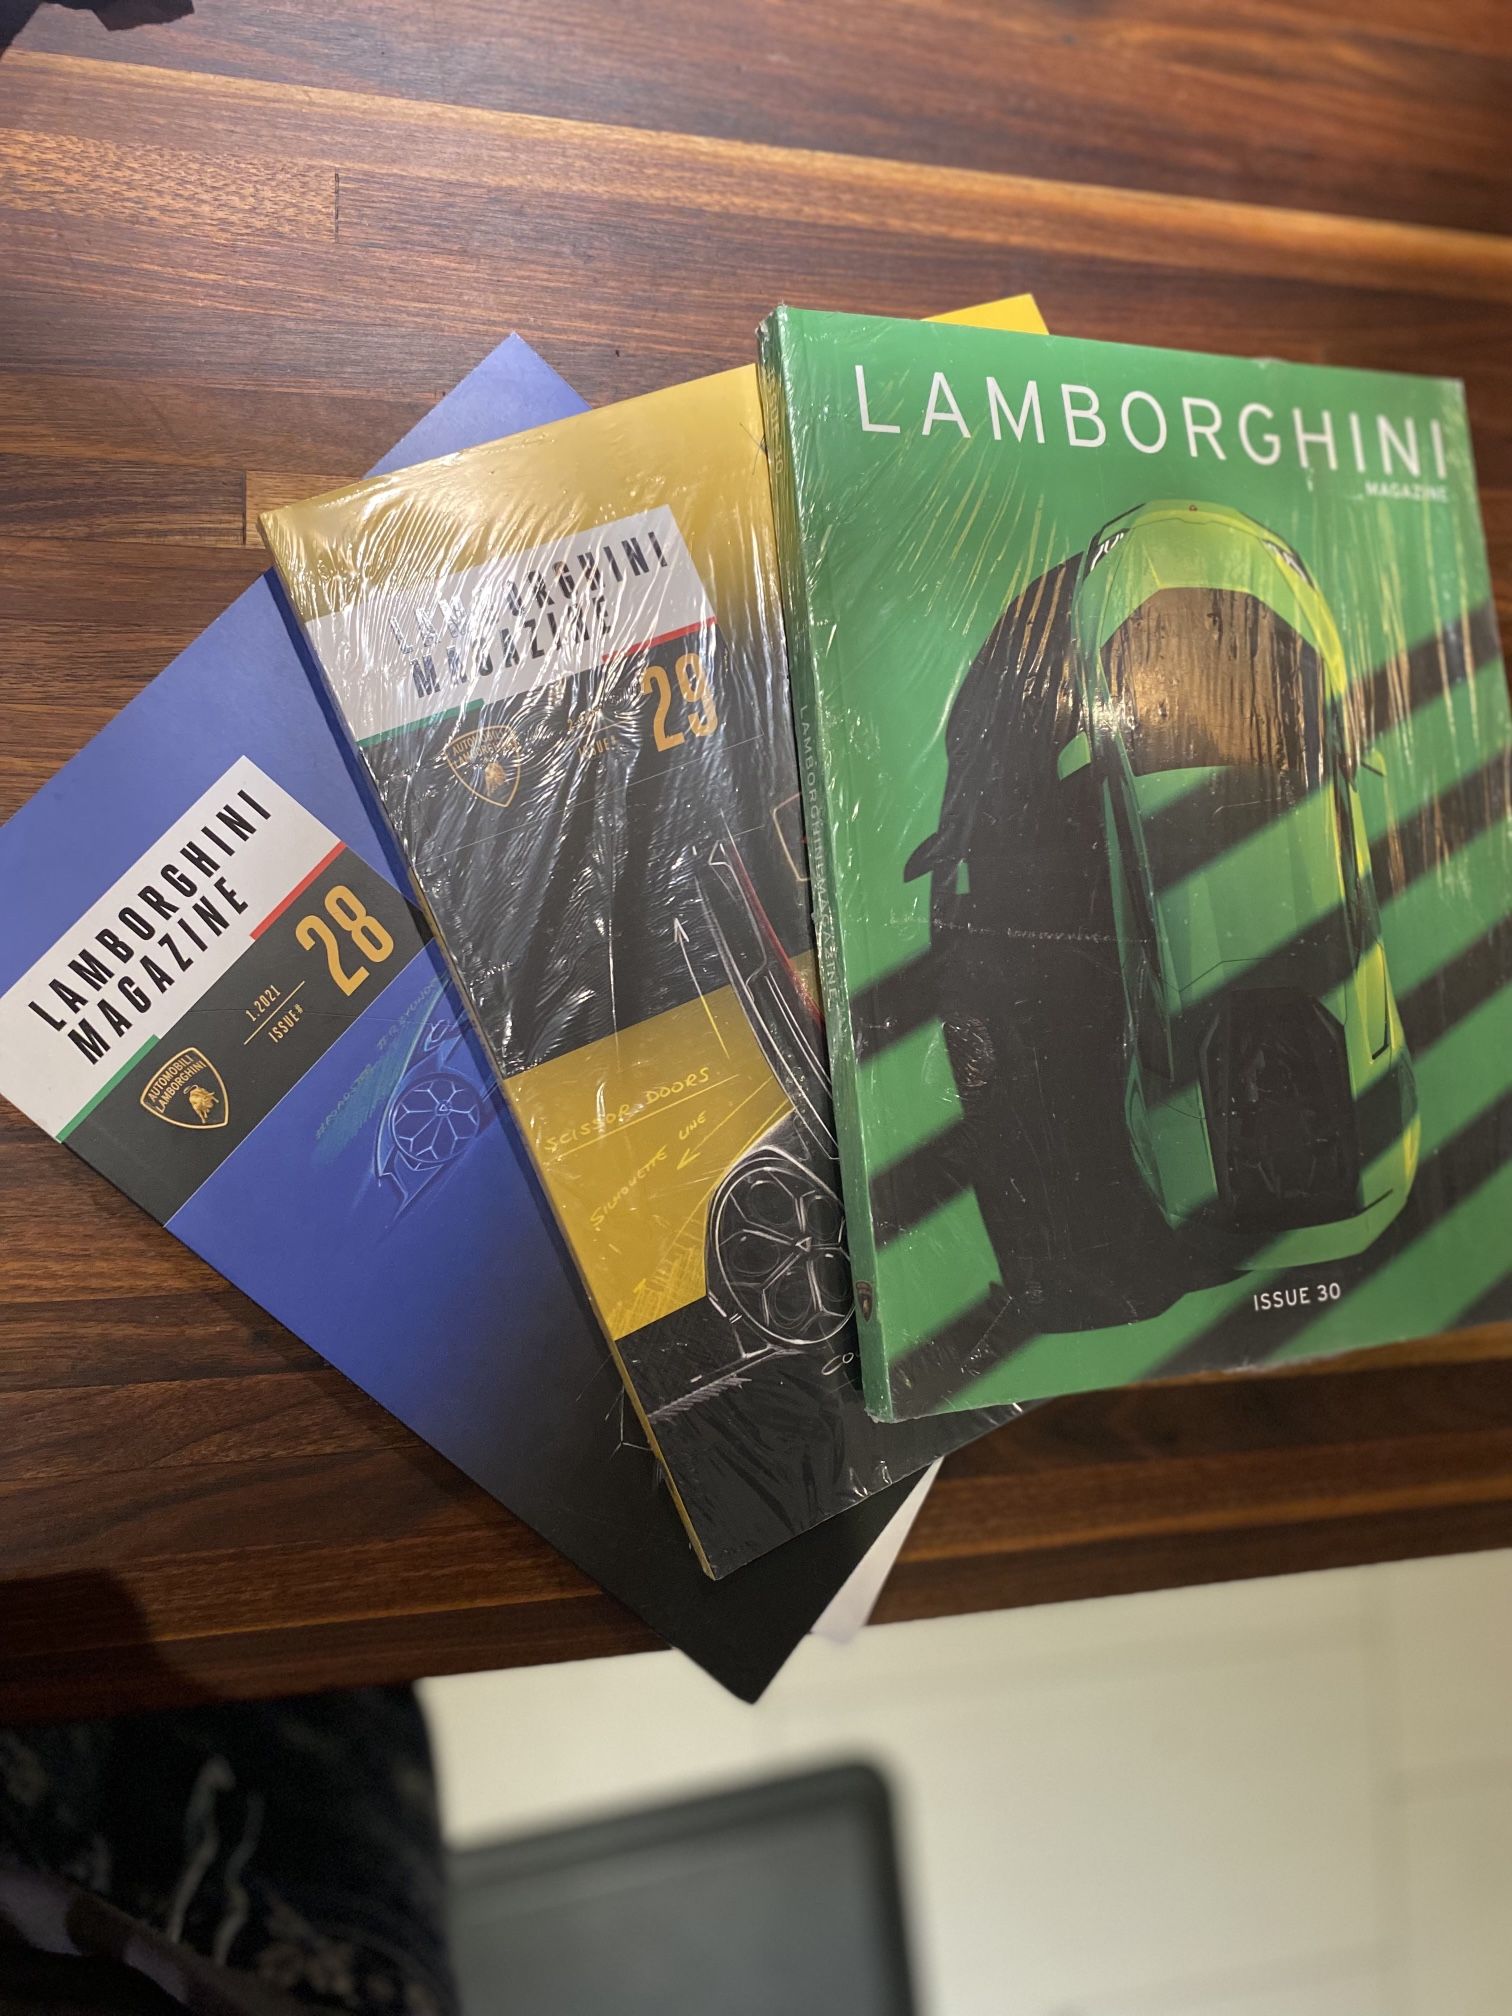 3 Original Lamborghini Books / Magazines New